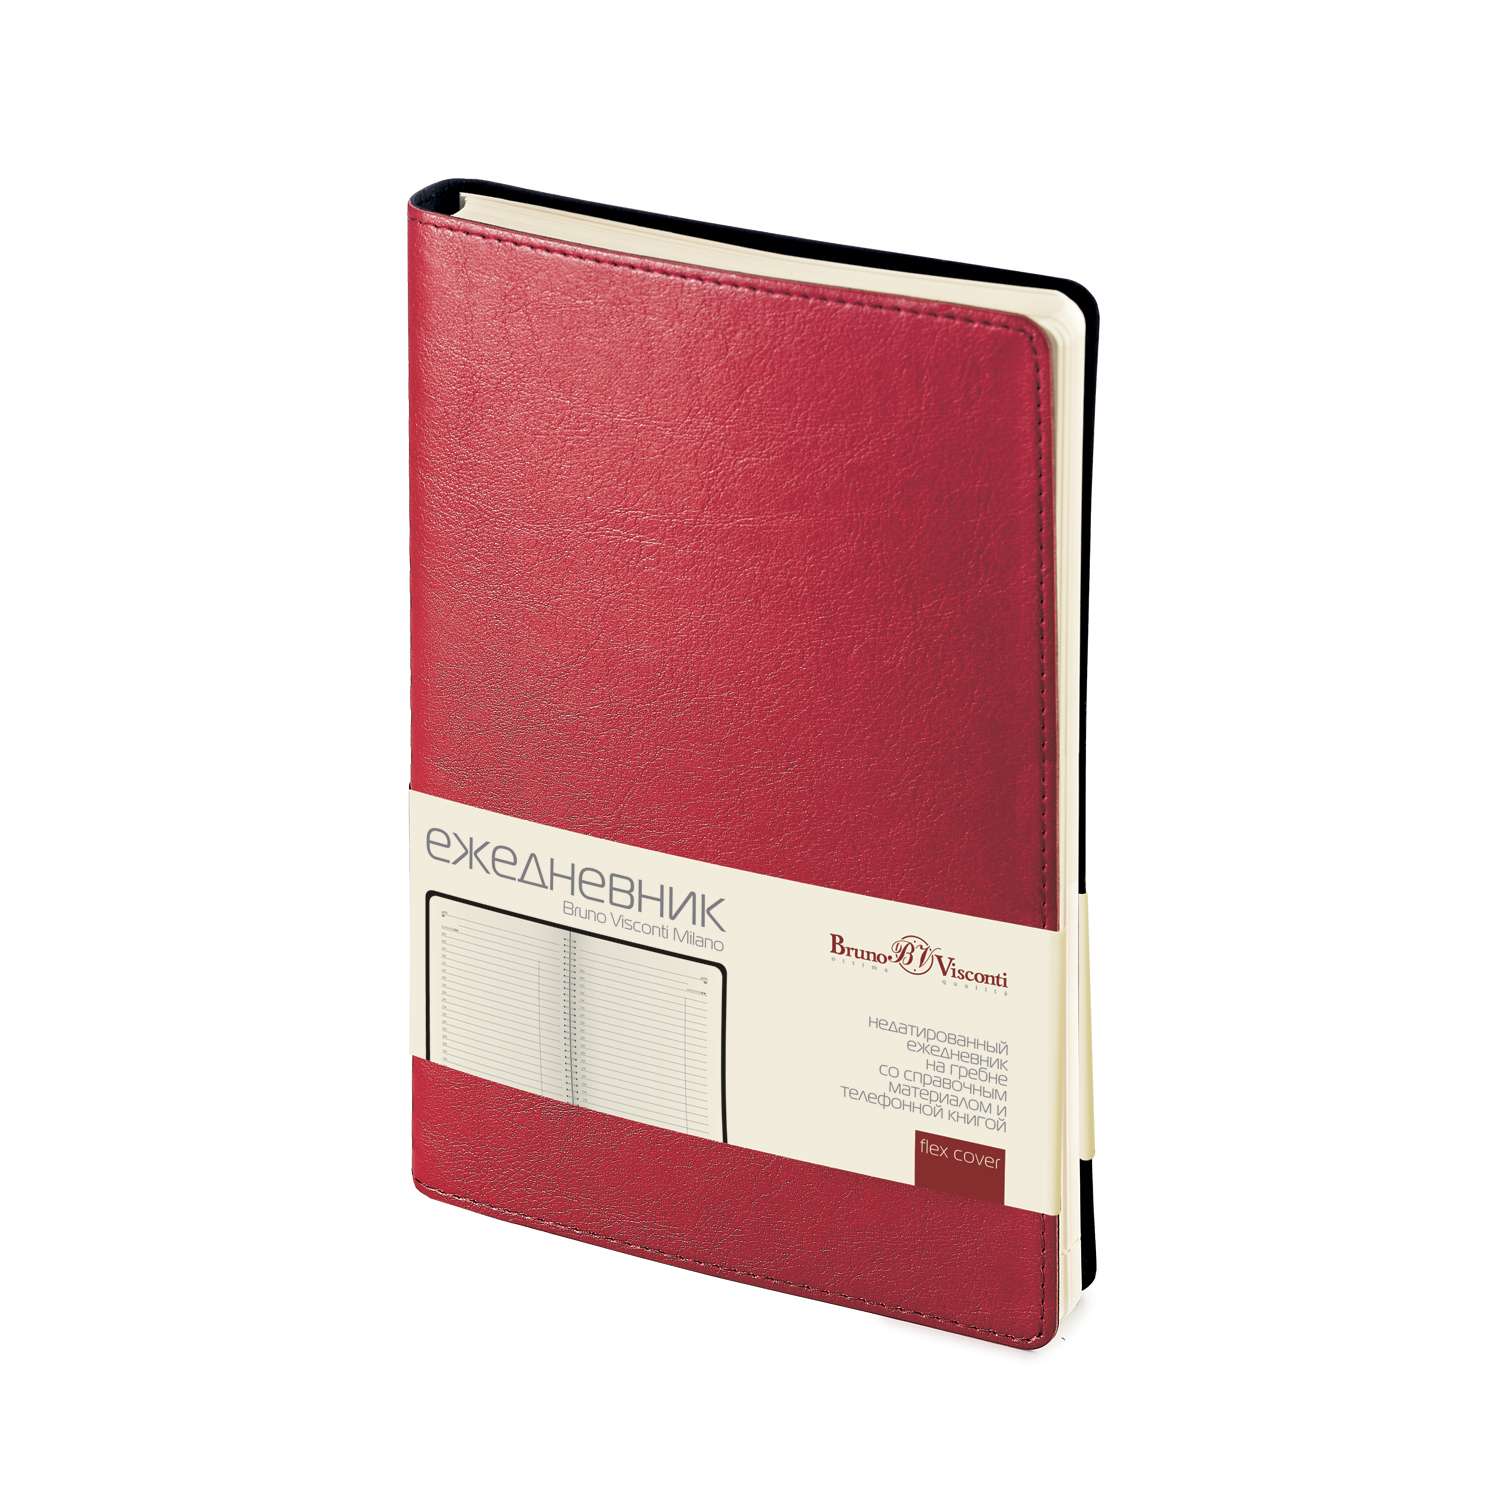 Набор подарочный Bruno Visconti Milano красный А5 135 х 215 мм ежедневник и ручка - фото 2